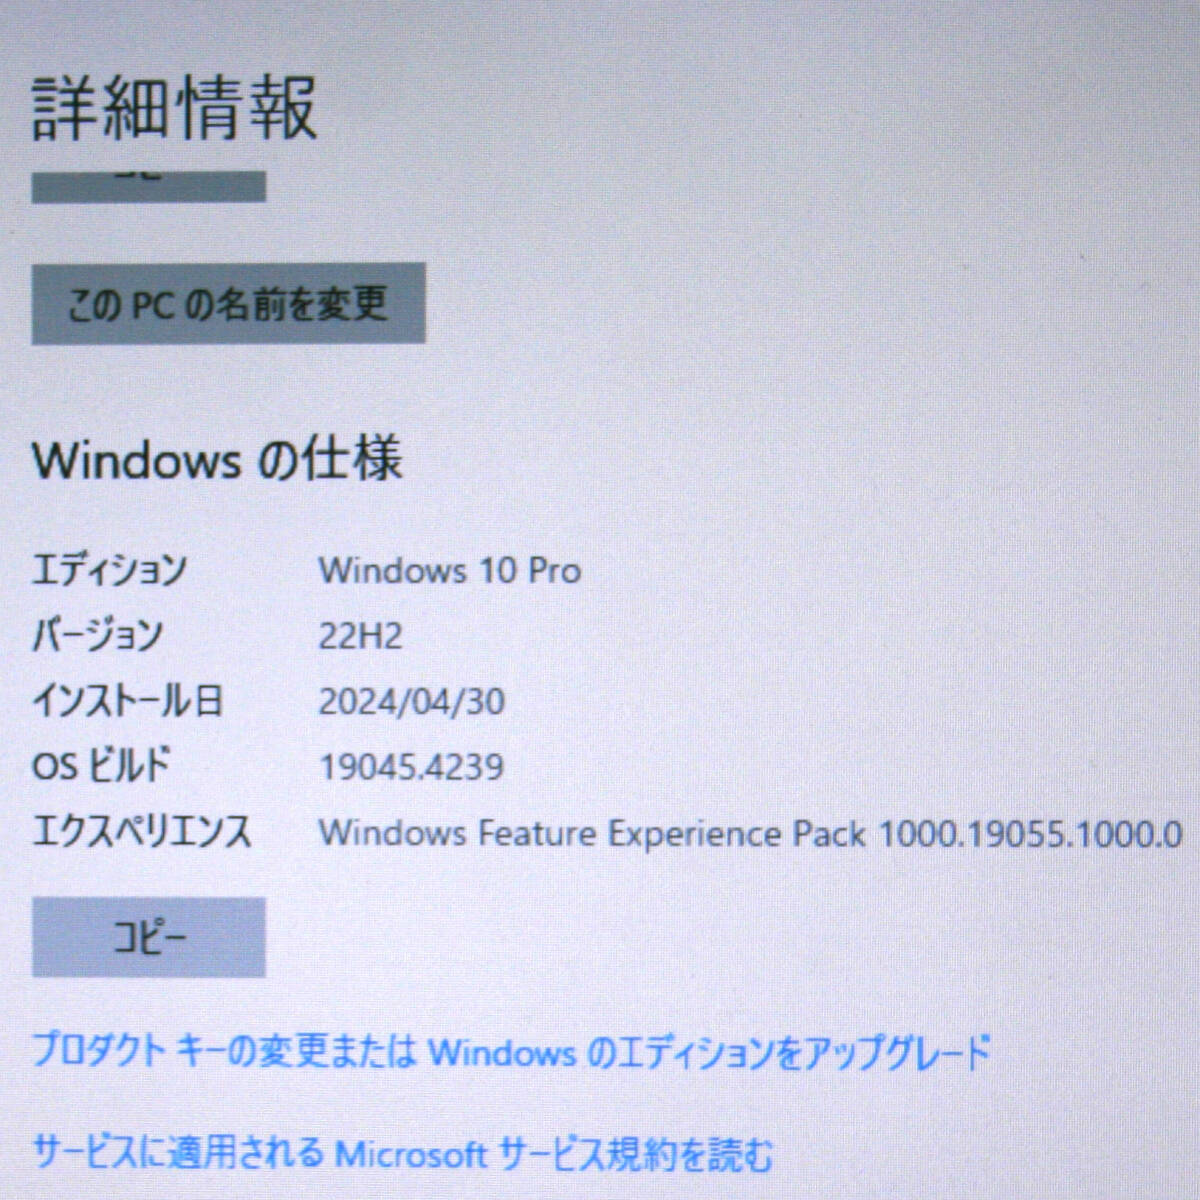 ノートパソコン Dell Latitude 5530 Core i3 2310M メモリ4GB HDD 320GB DVD-ROM ACアダプター付属 バッテリー充電不可の画像3